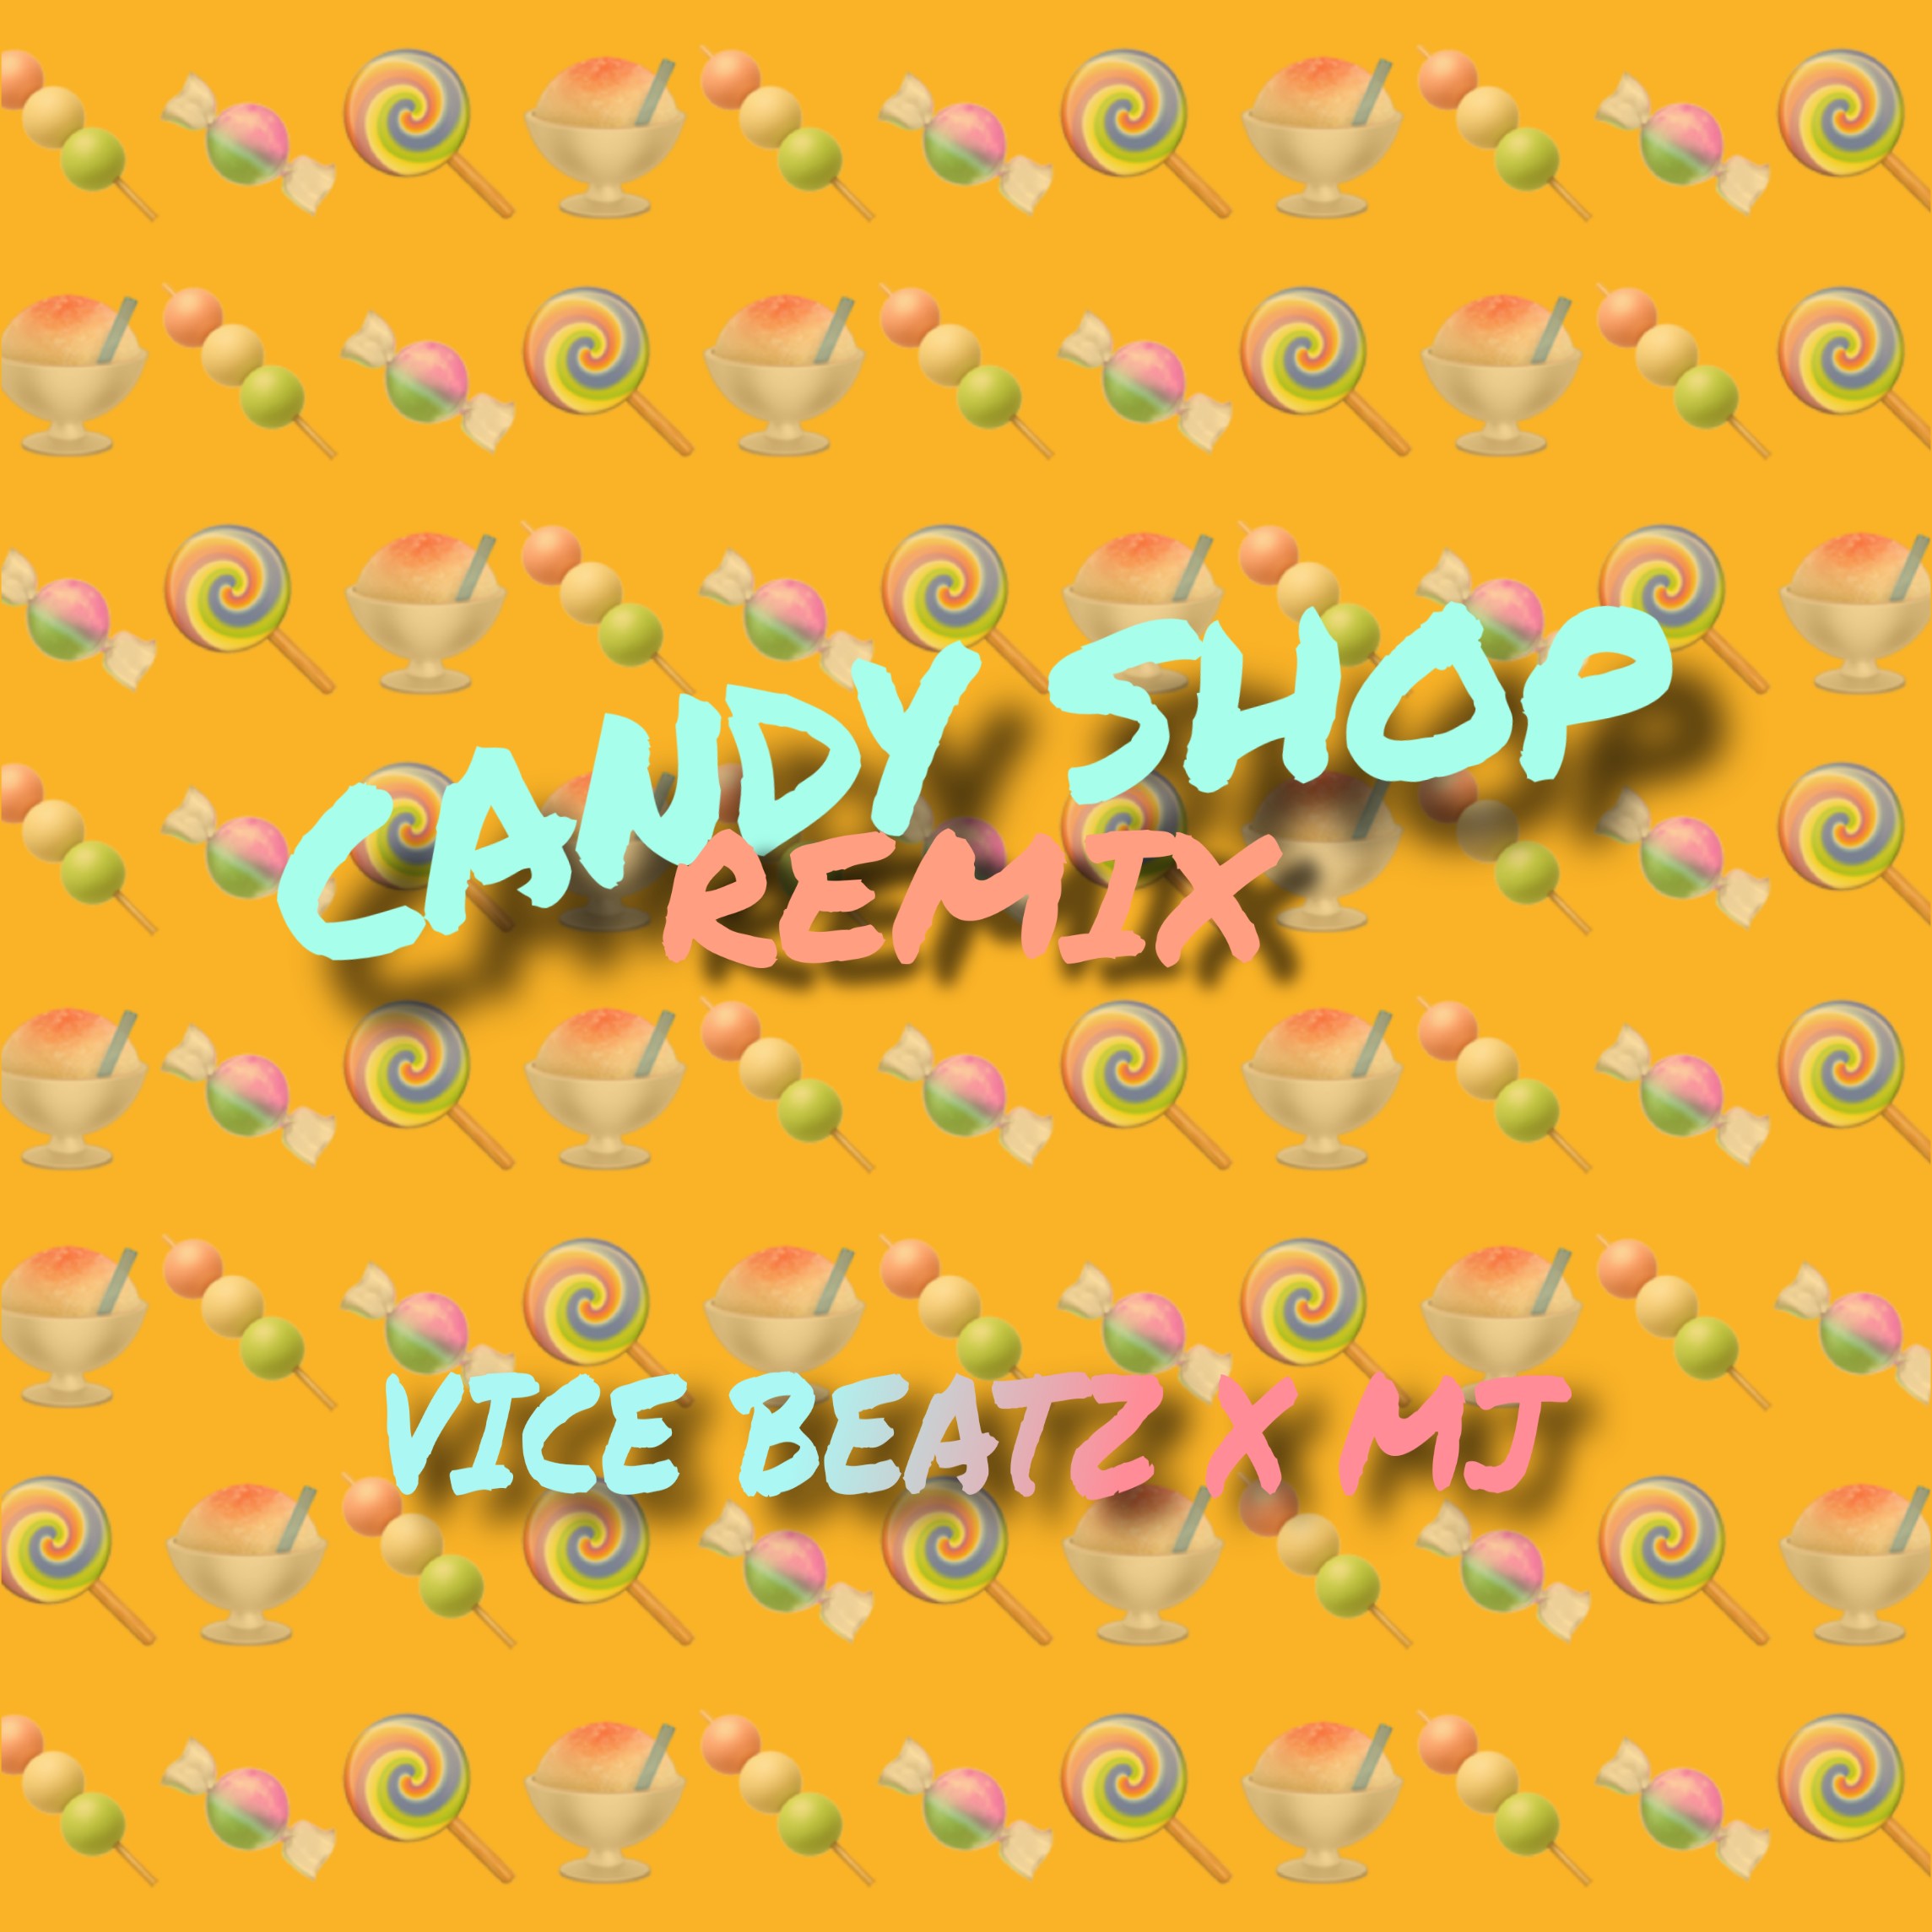 ดาวน์โหลด Candy Shop (Vice_Beatz & MJ Remix)_ CLICK ON 'BUY' For Free Download